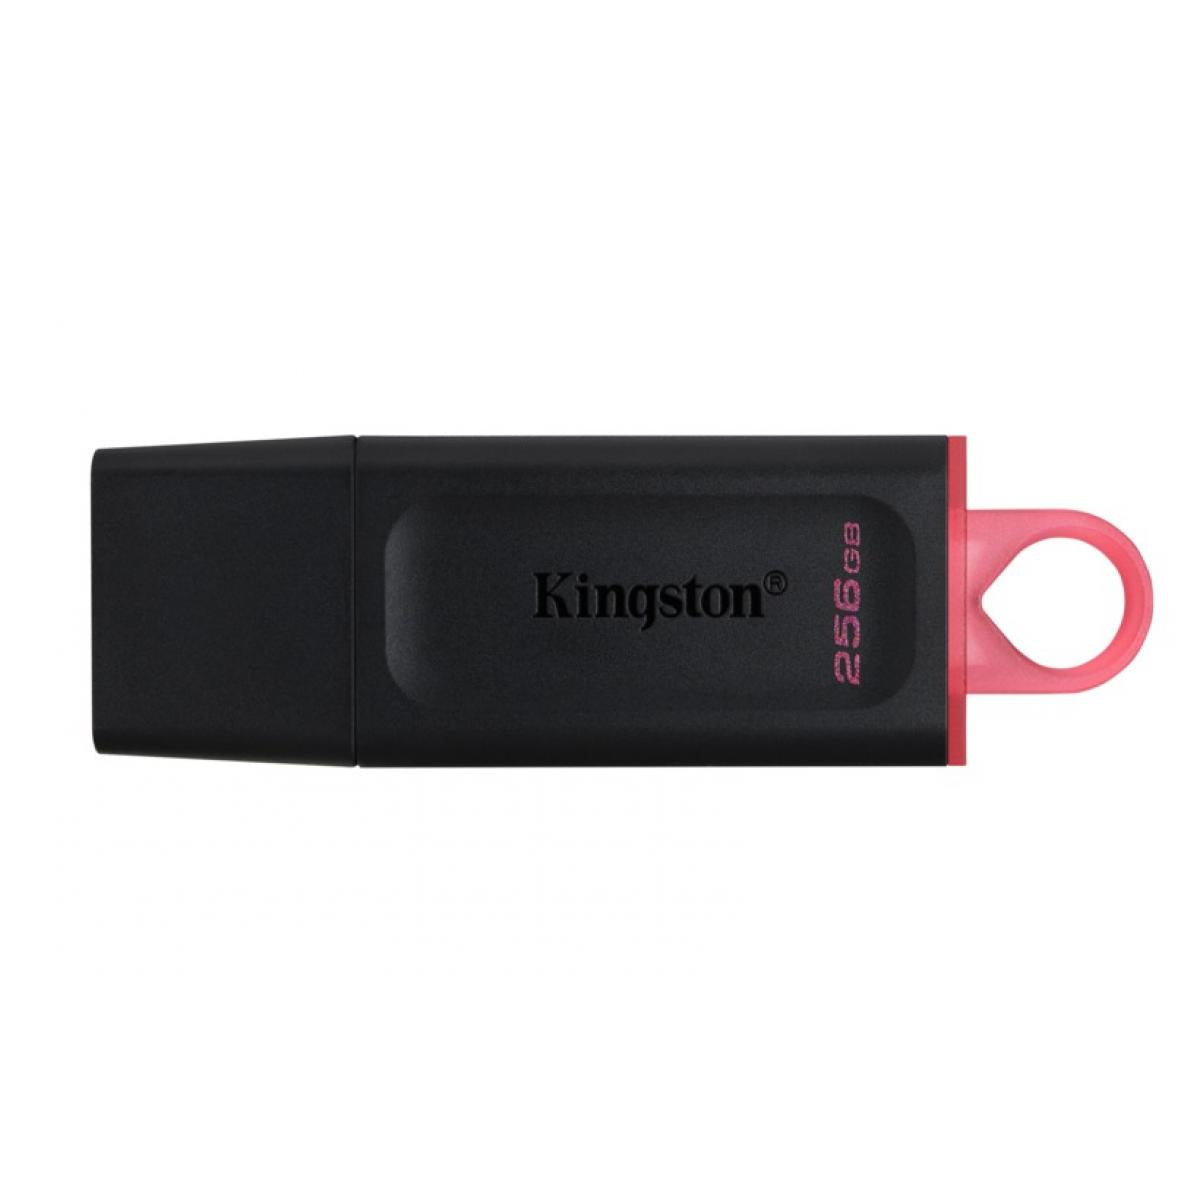 Kingston Flash 256GB DataTraveler Exodia - USB 3.2